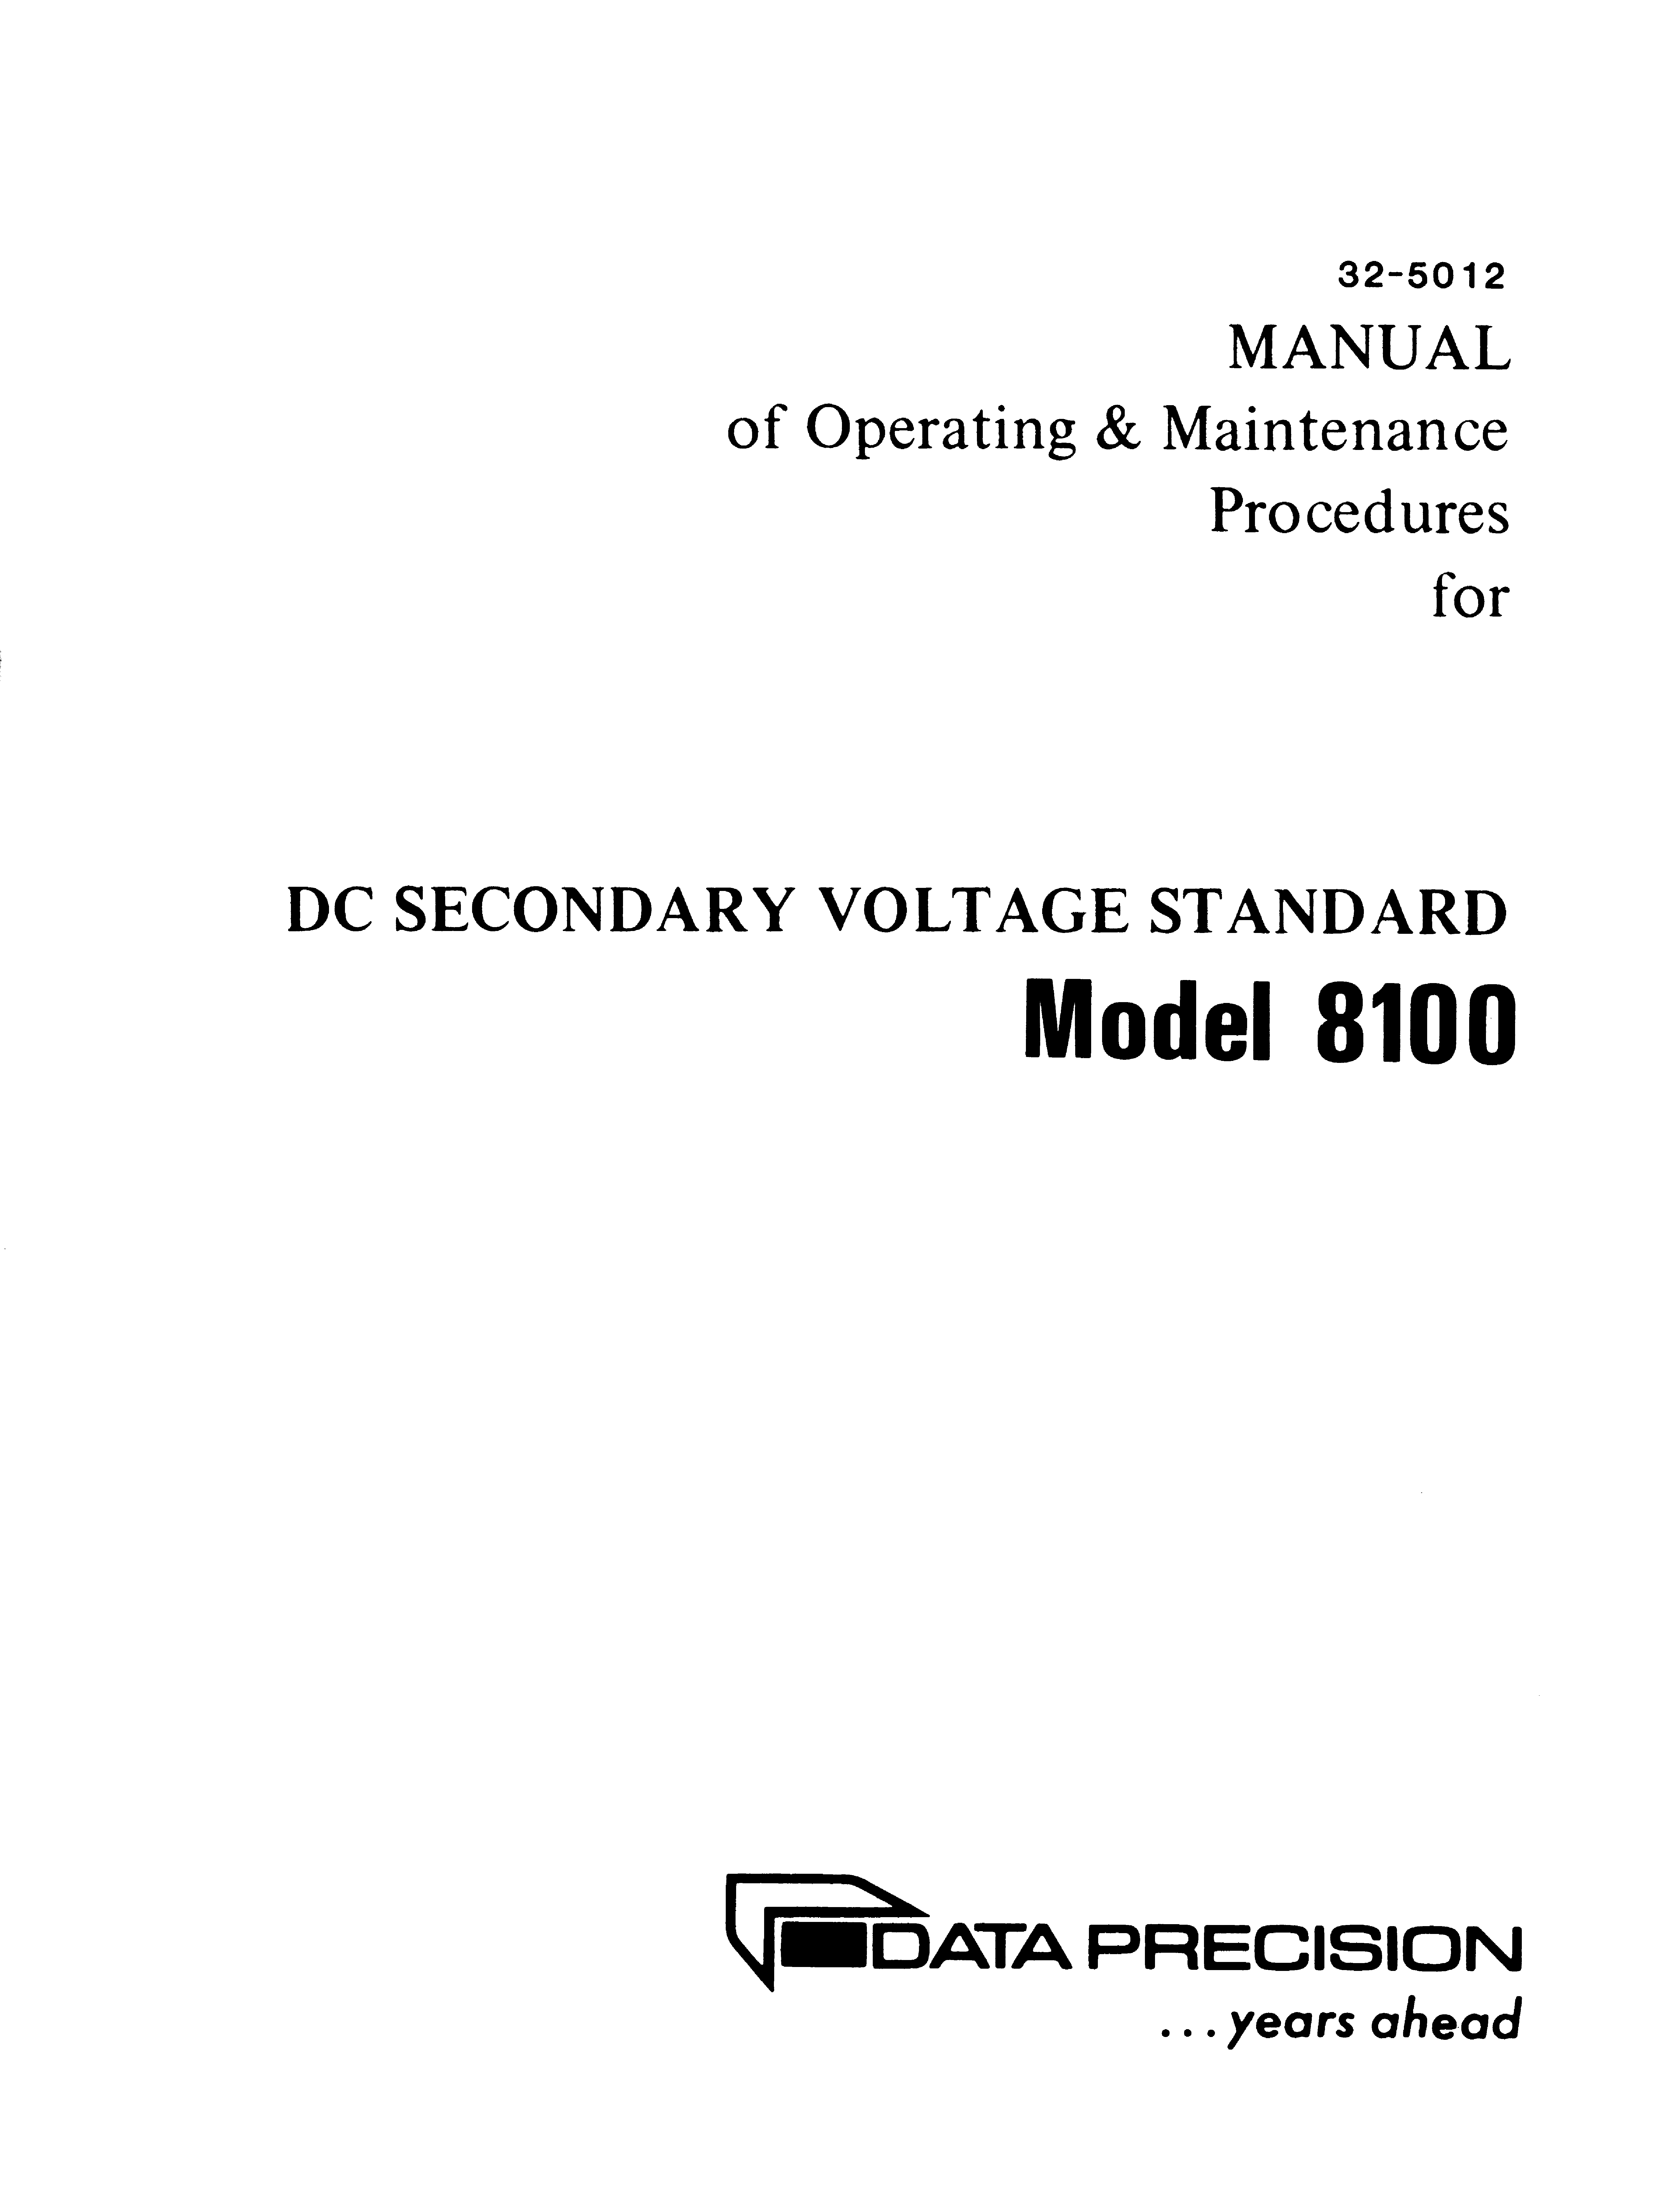 Data precision 3500 manual